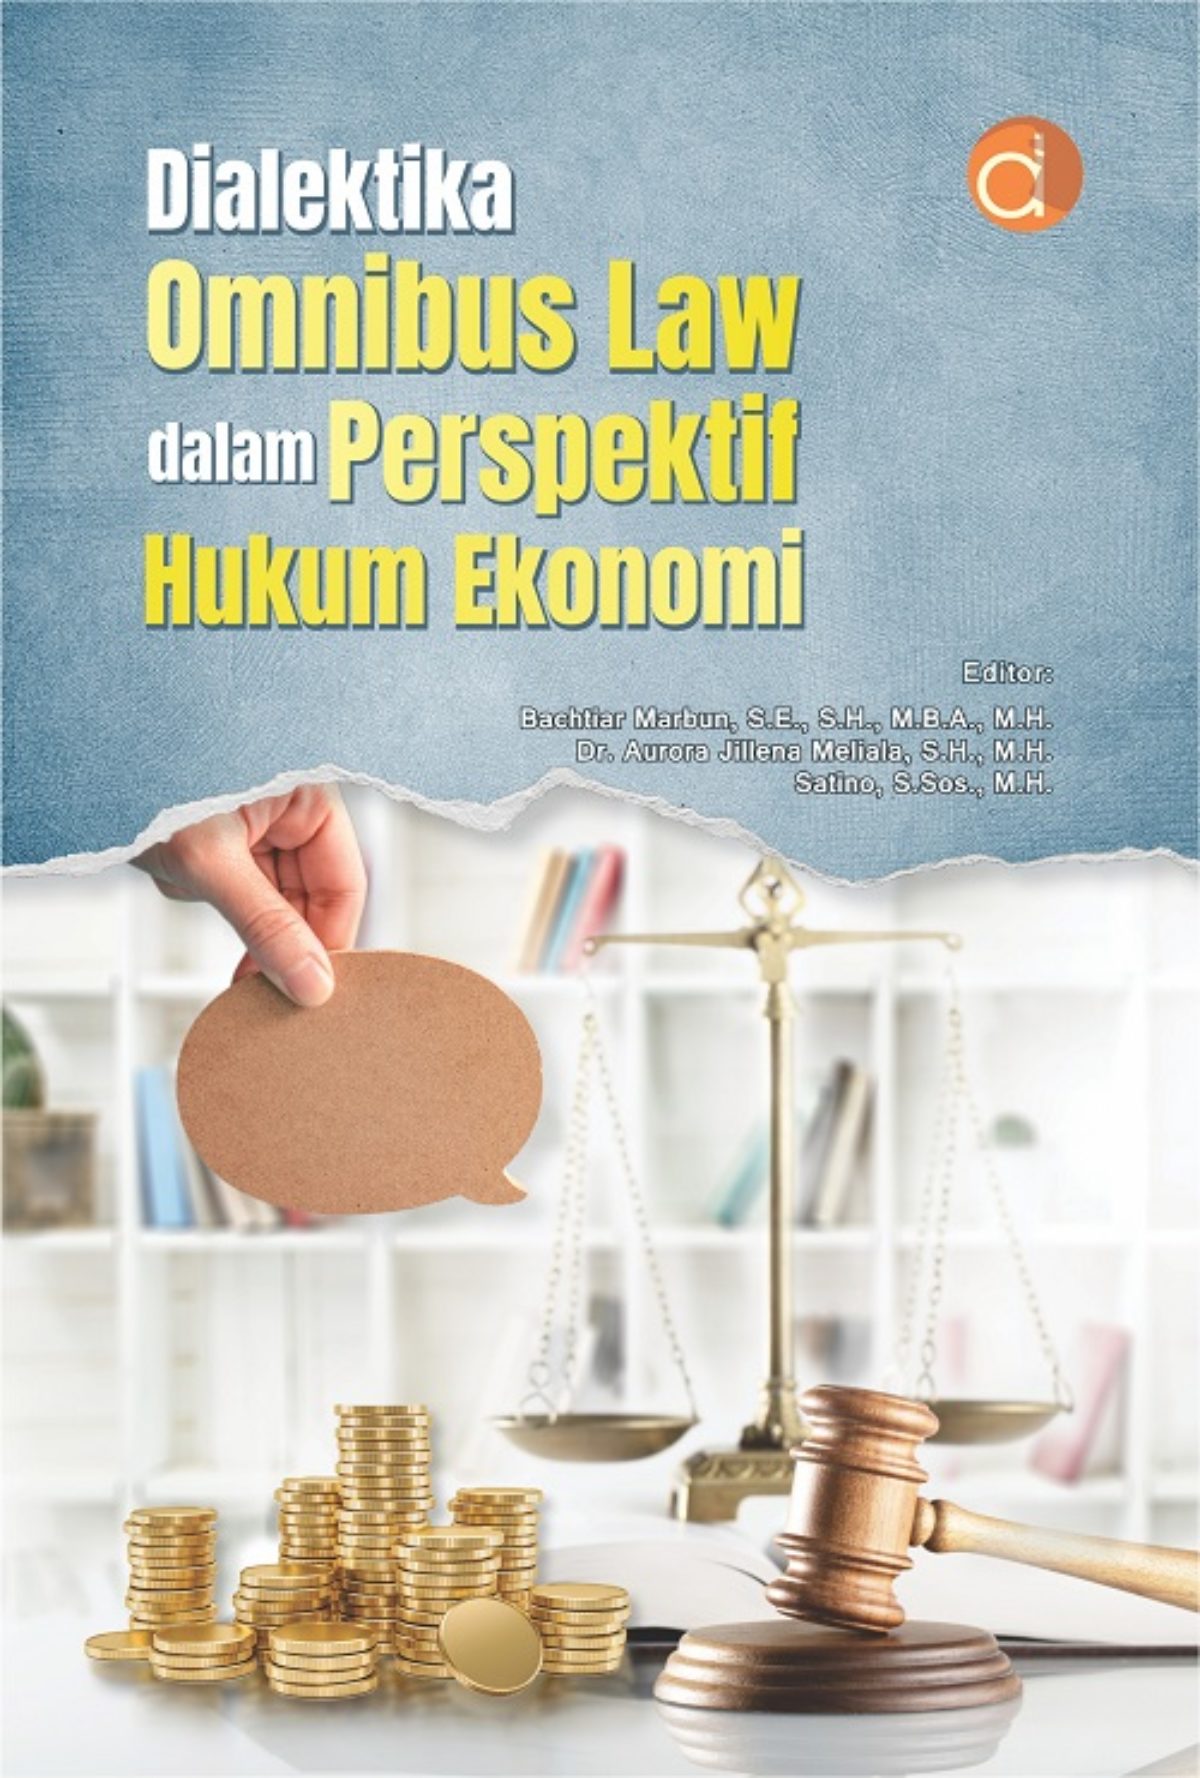 Dialektika omnibus law dalam perspektif hukum ekonomi